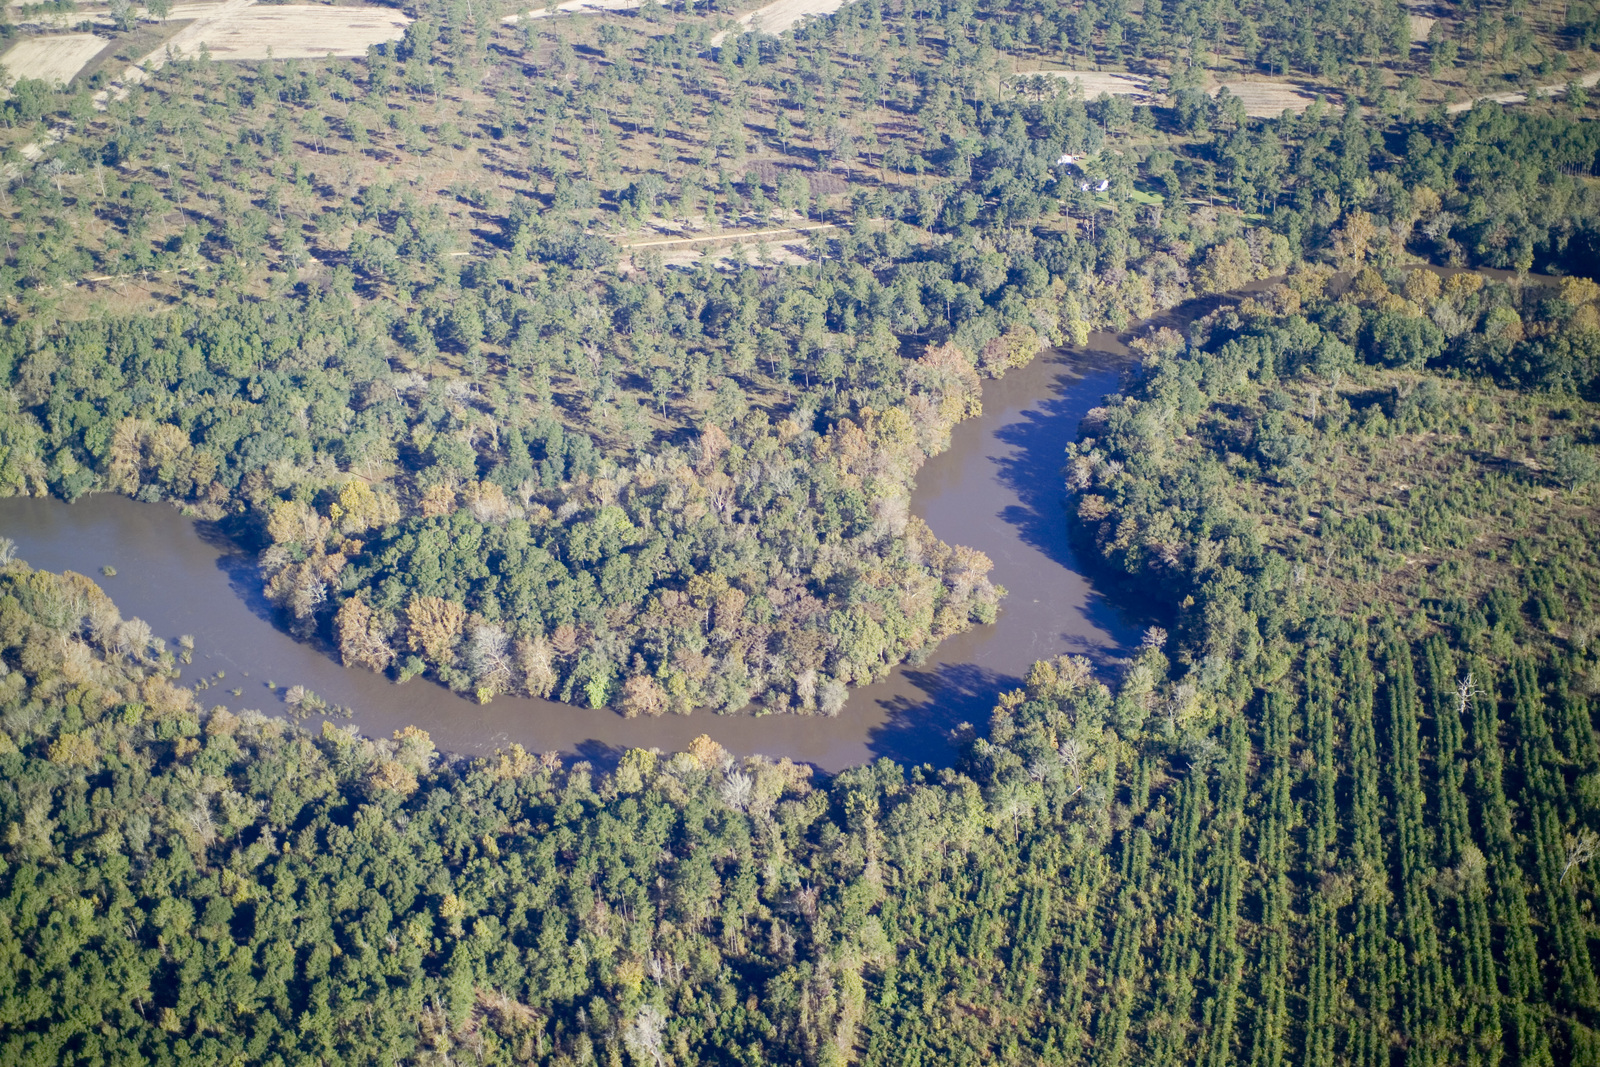 Aerial view of flint river flowing